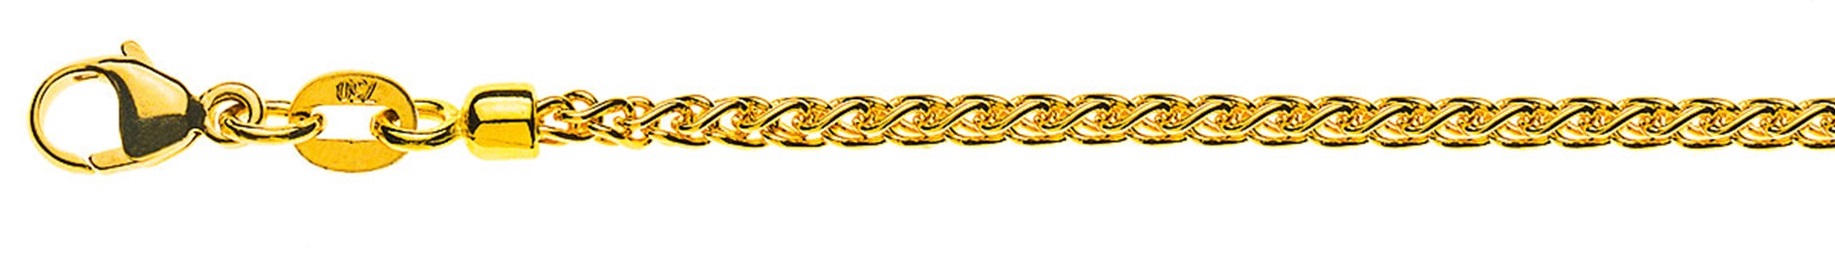 AURONOS Prestige Halskette Gelbgold 18K Zopfkette 50cm 2.15mm